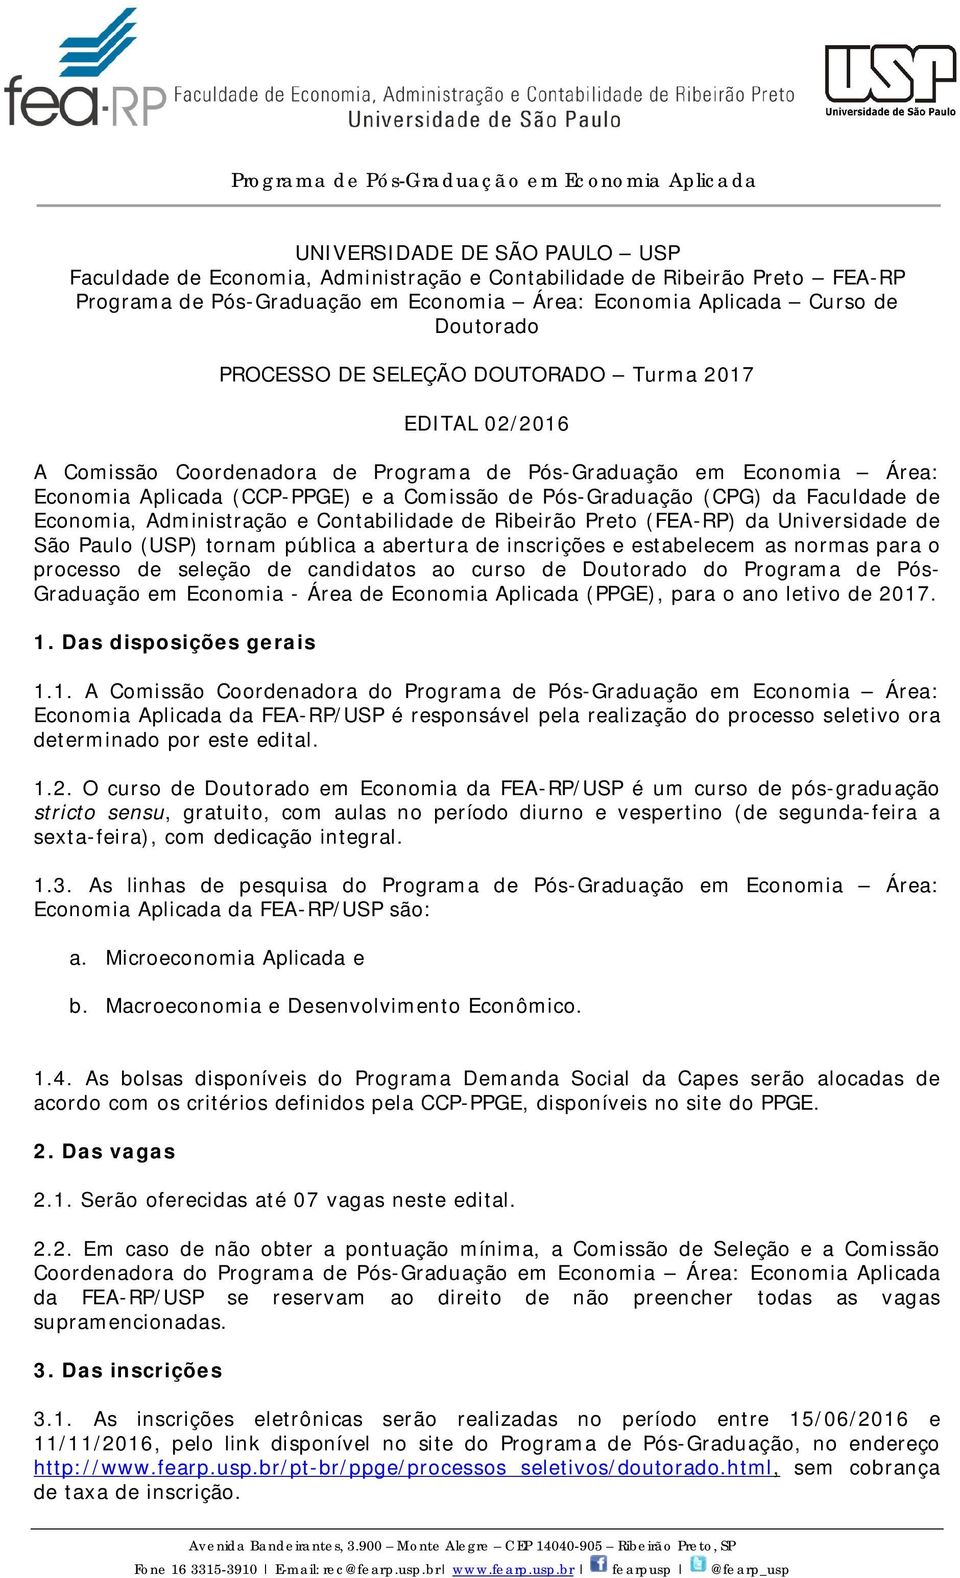 Economia, Administração e Contabilidade de Ribeirão Preto (FEA-RP) da Universidade de São Paulo (USP) tornam pública a abertura de inscrições e estabelecem as normas para o processo de seleção de